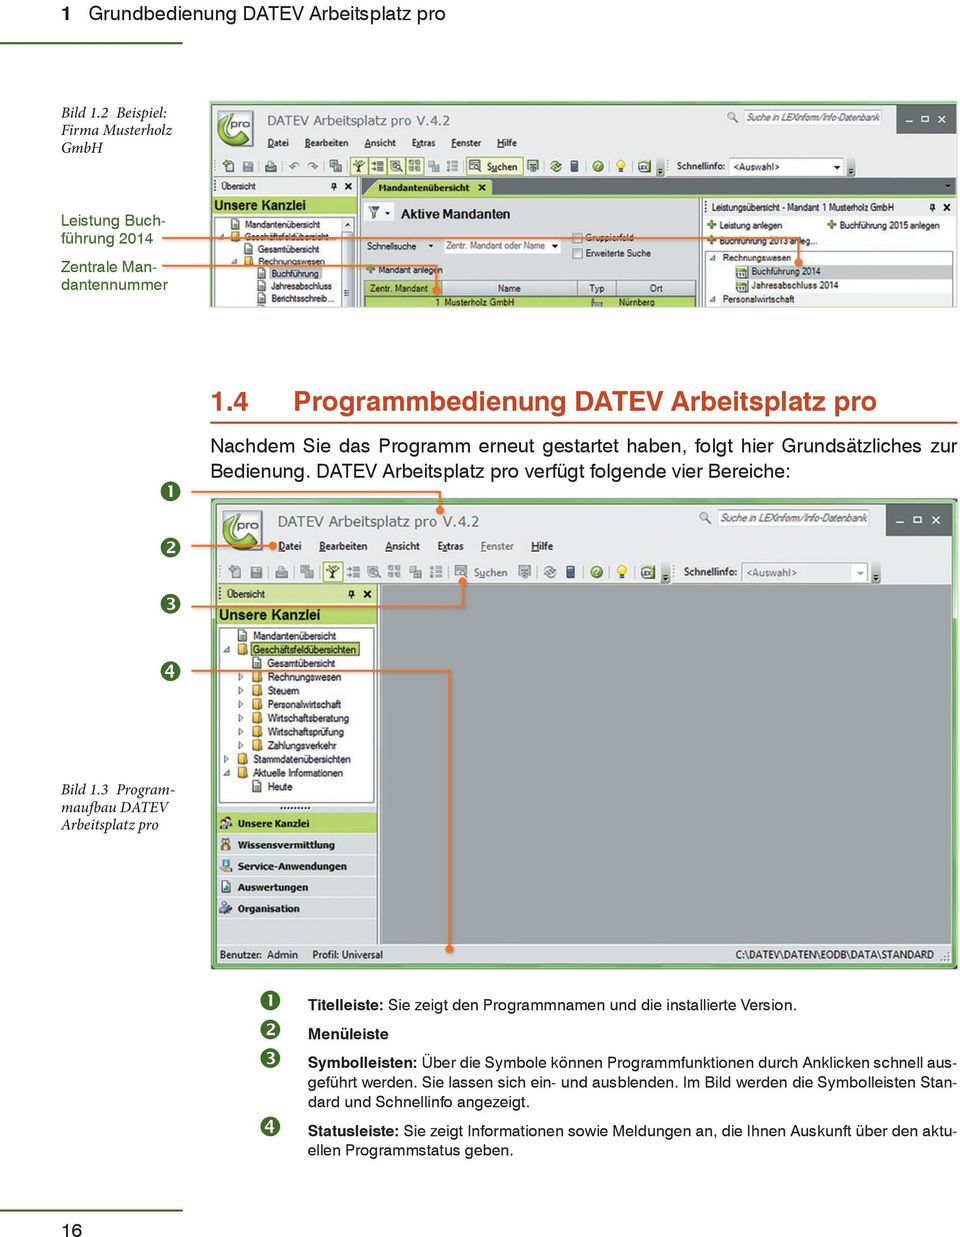 DATEV Arbeitsplatz pro verfügt folgende vier Bereiche: Bild 1.3 Programmaufbau DATEV Arbeitsplatz pro Titelleiste: Sie zeigt den Programmnamen und die installierte Version.